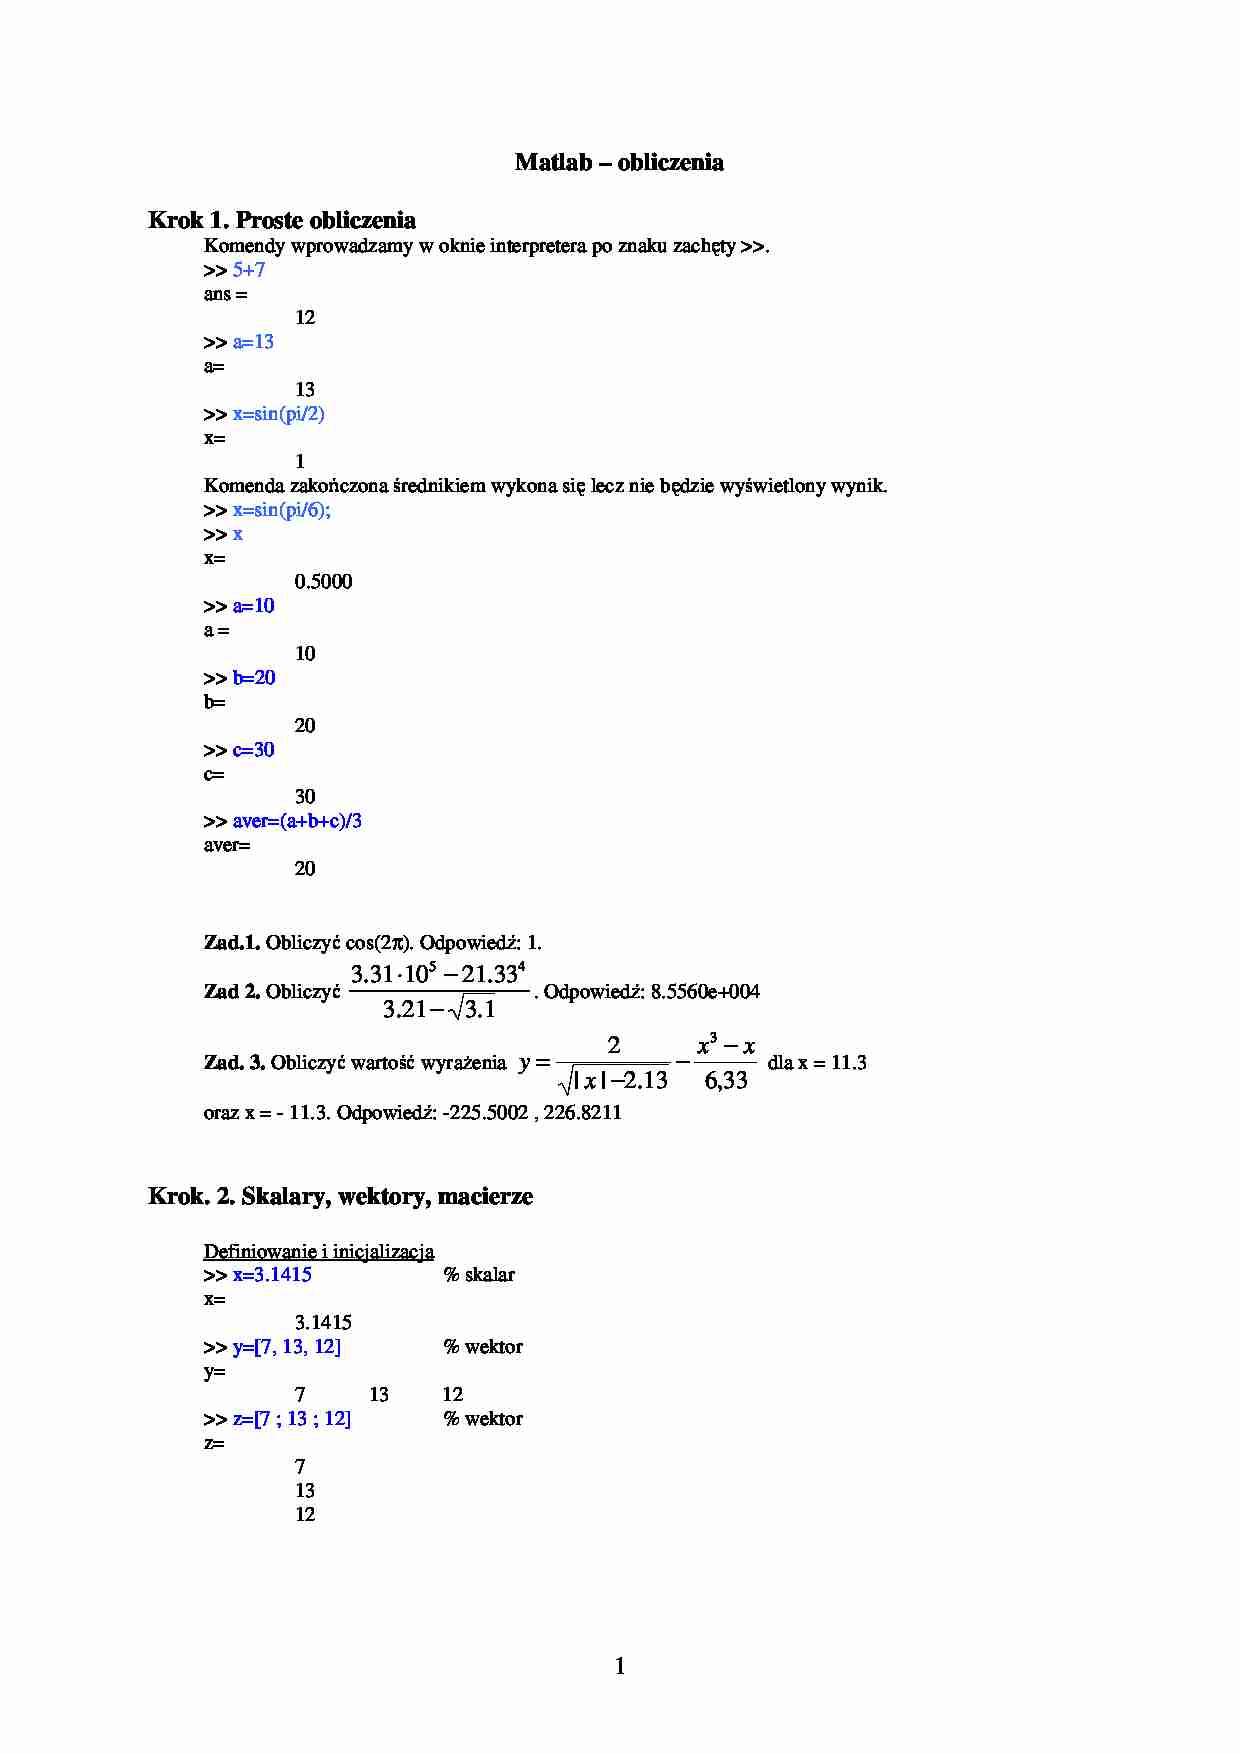 Matlab obliczenia - omówienie - strona 1